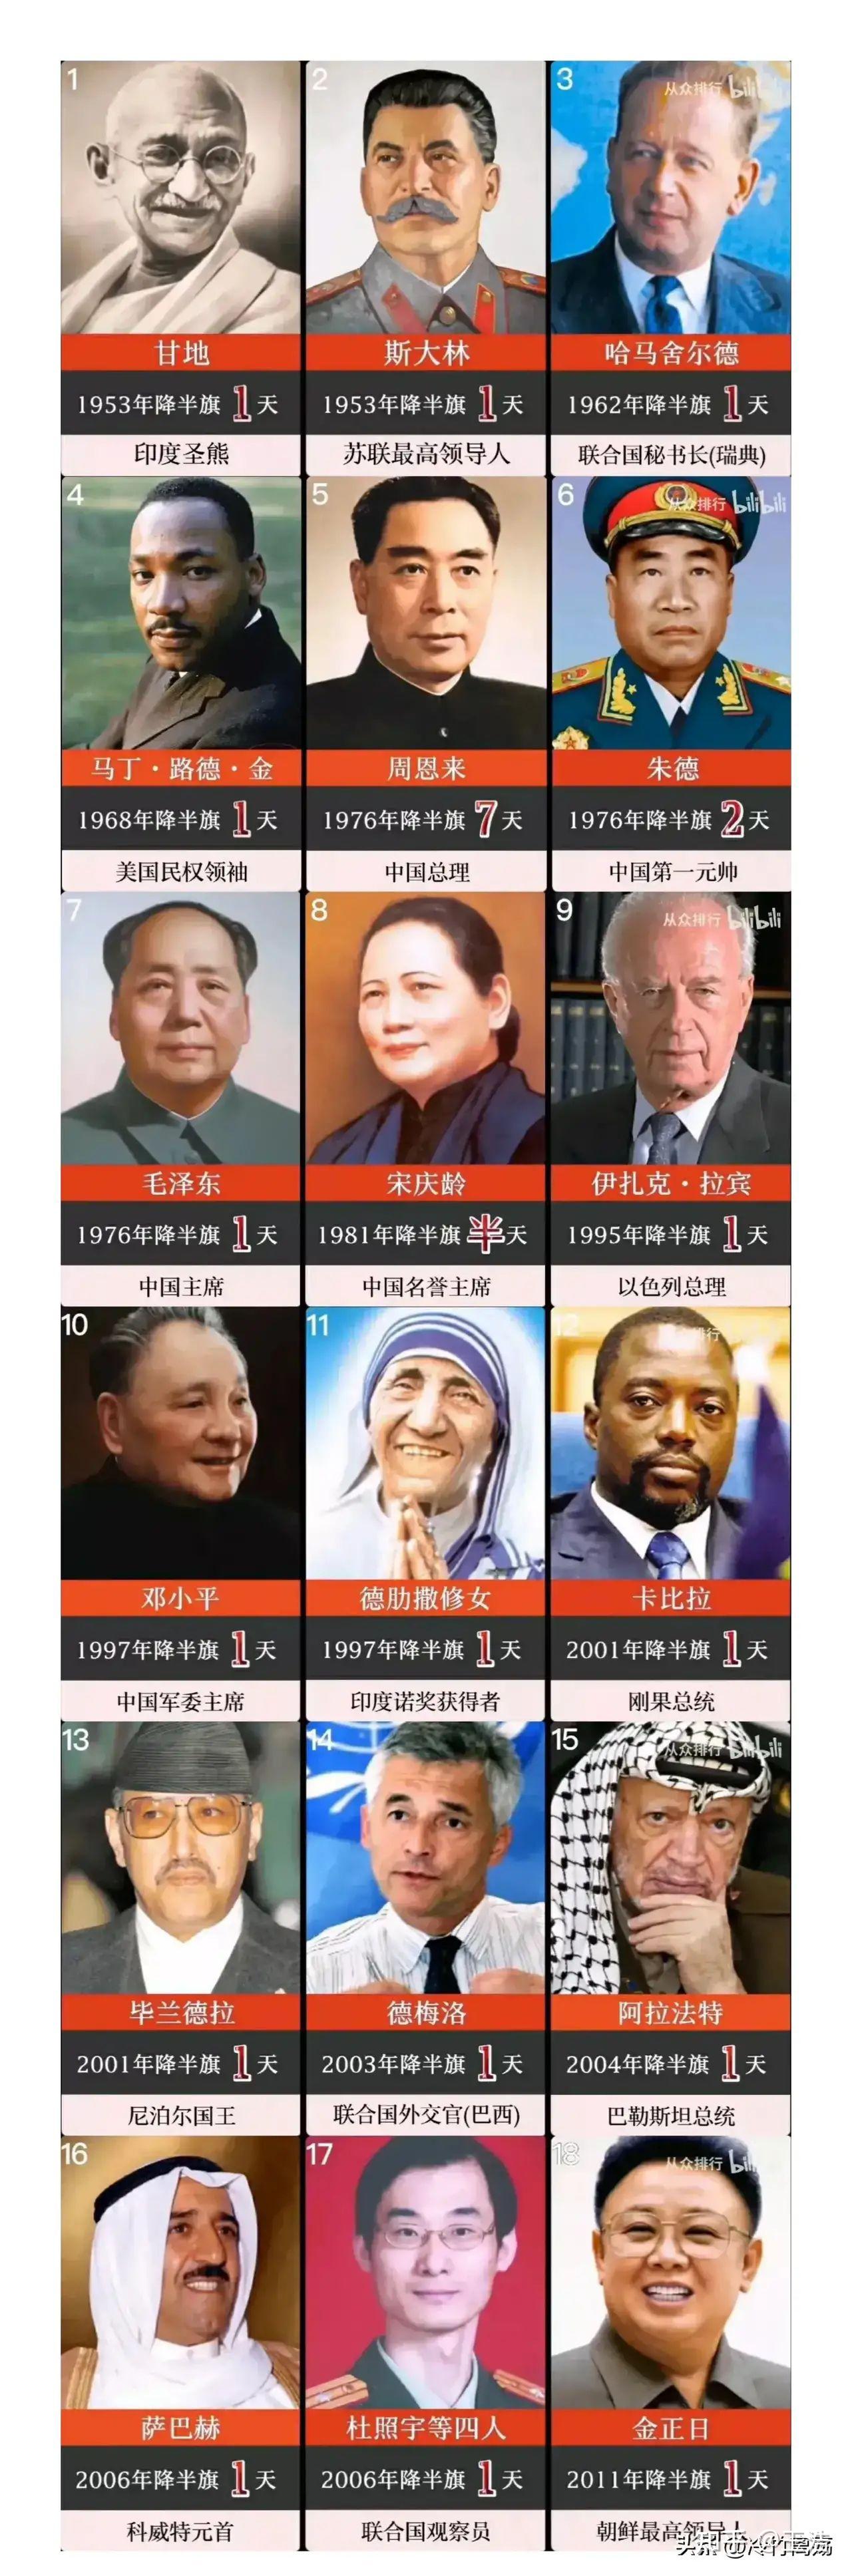 迄今联合国为17人降半旗，其中6名中国人，一位不是国家领导人